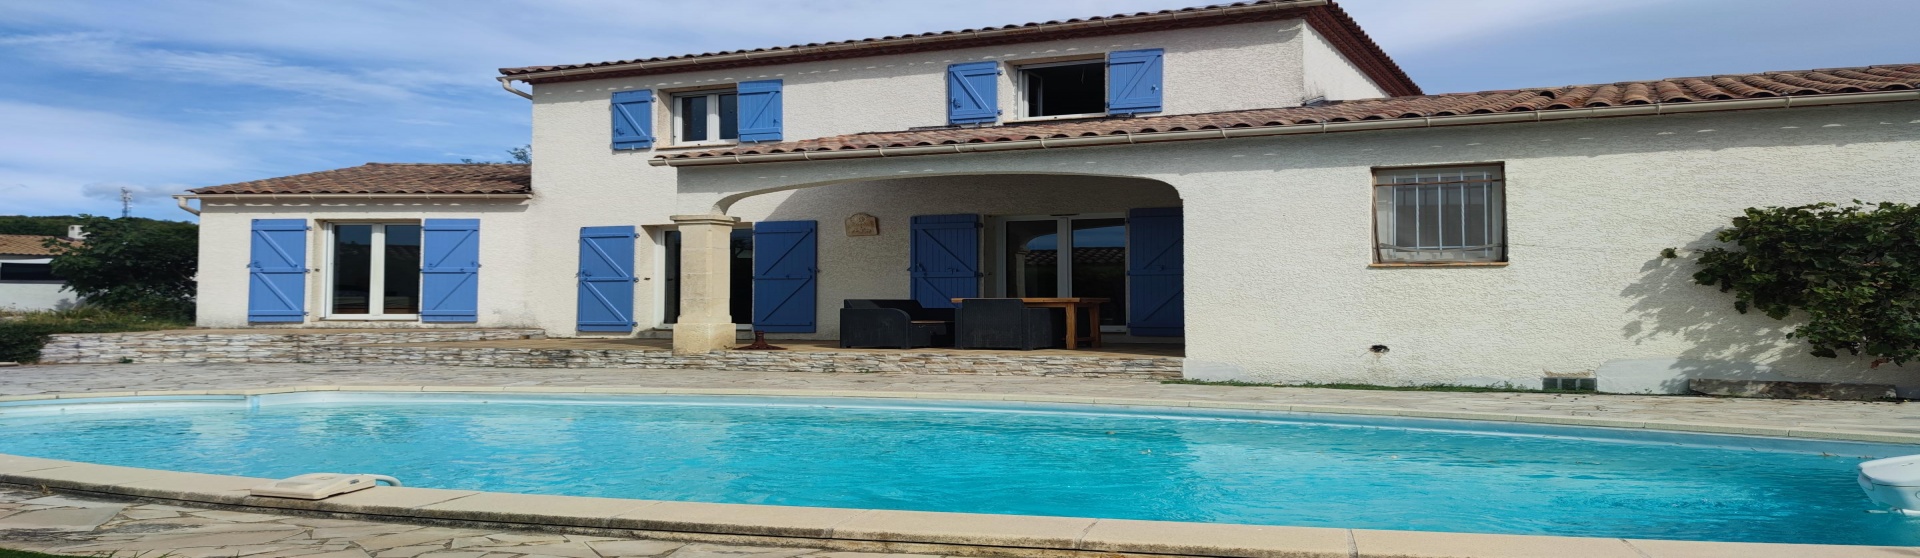 Les Matelles Villa F5 125 m² sur 609 m² de terrain avec piscine